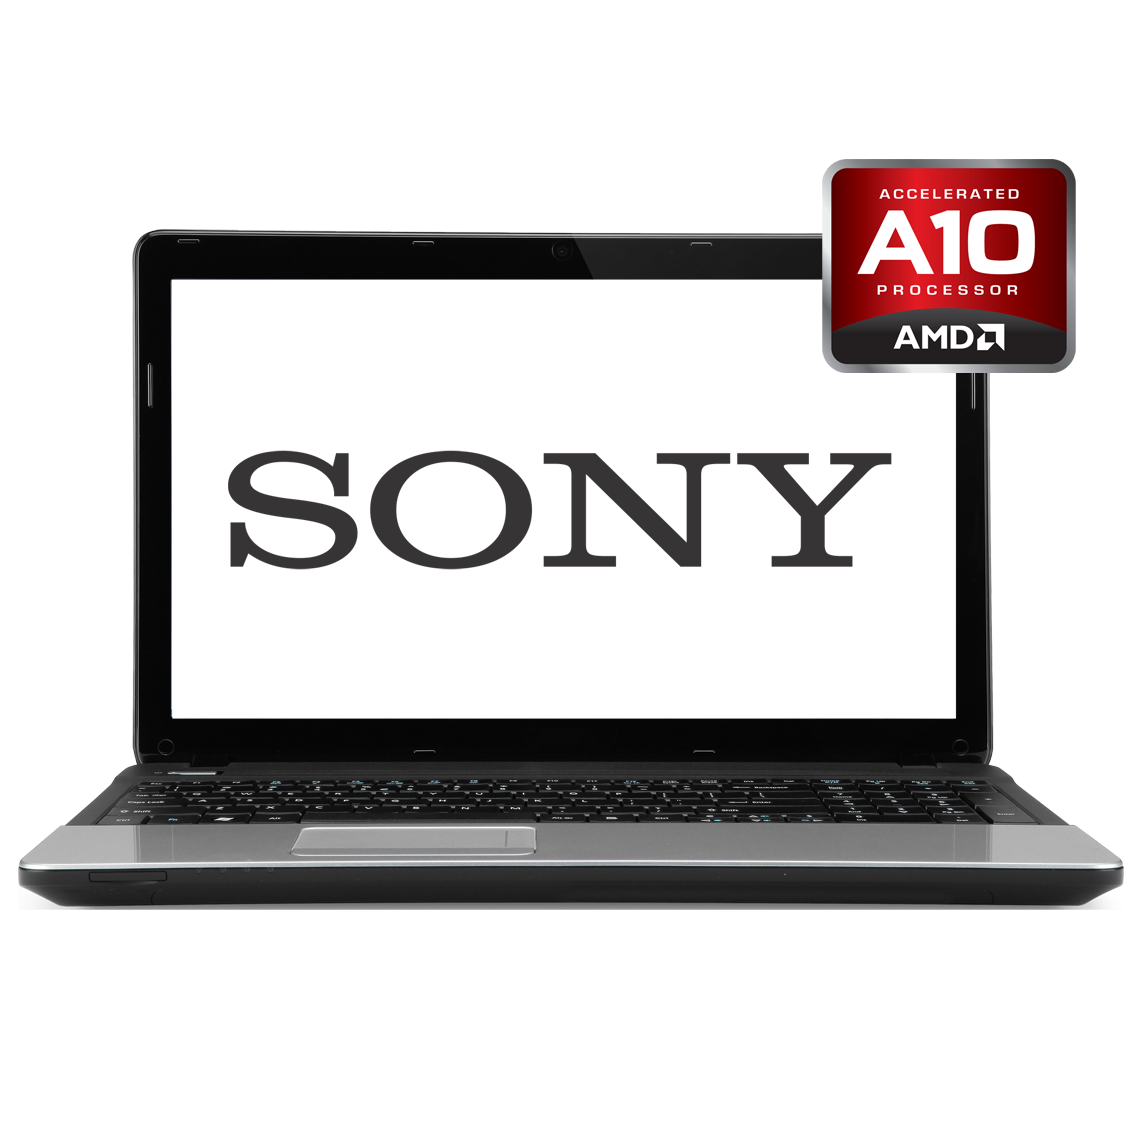 Sony - 15 inch AMD A10